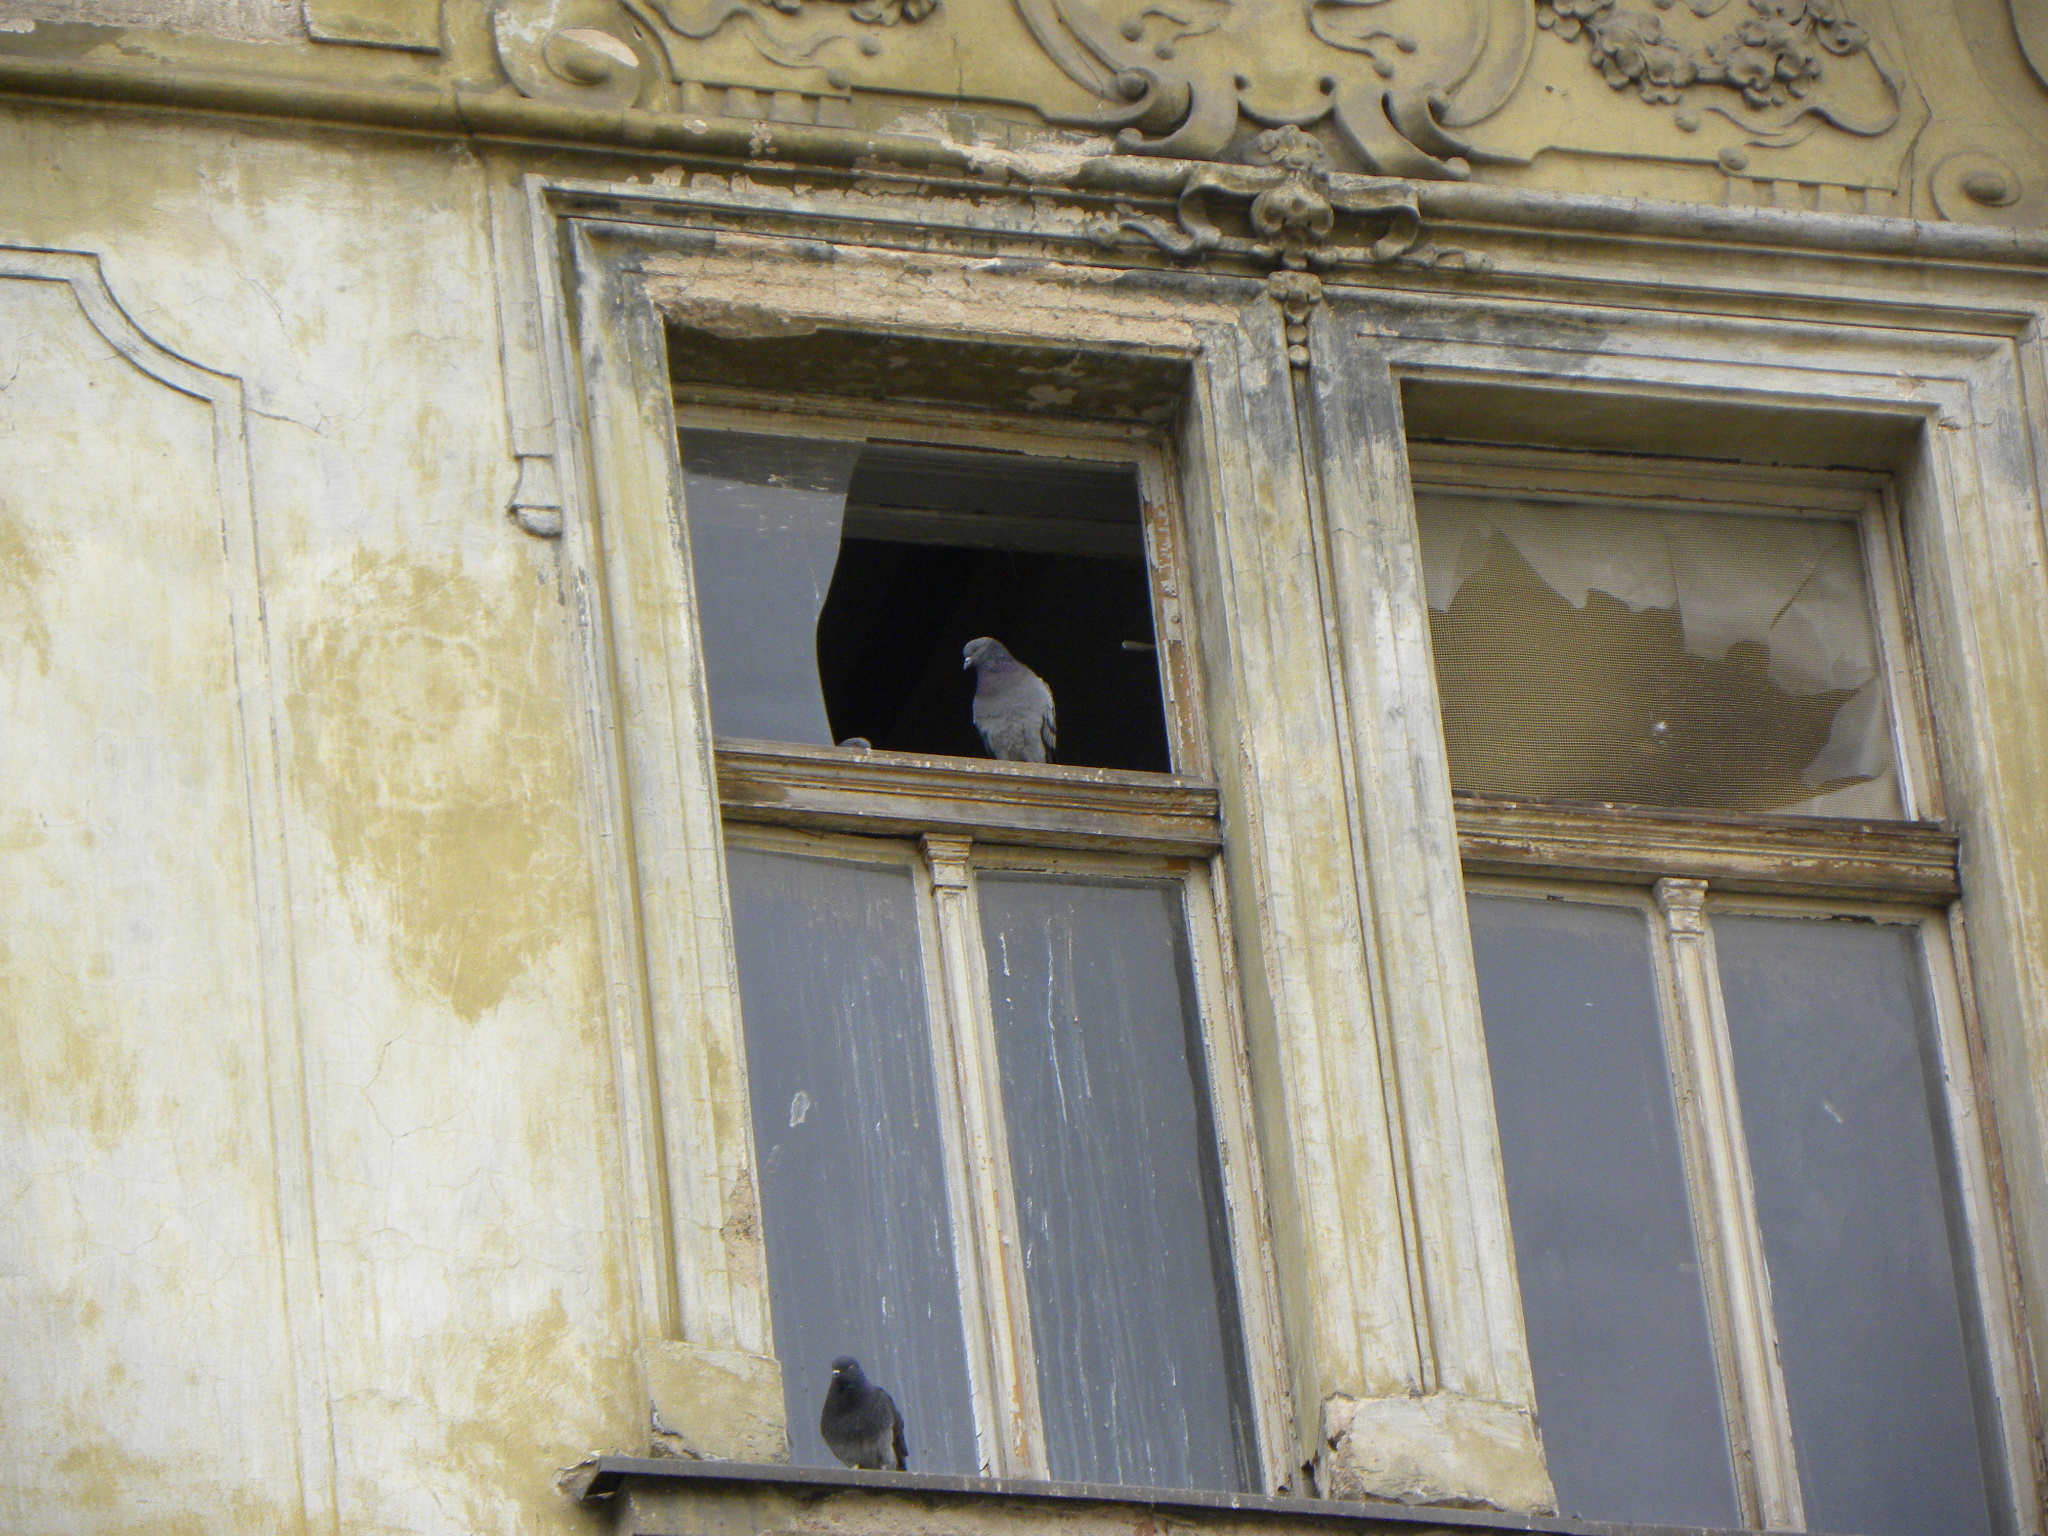 dům v rekonstrukci s rozbitými okny a holubem na římse